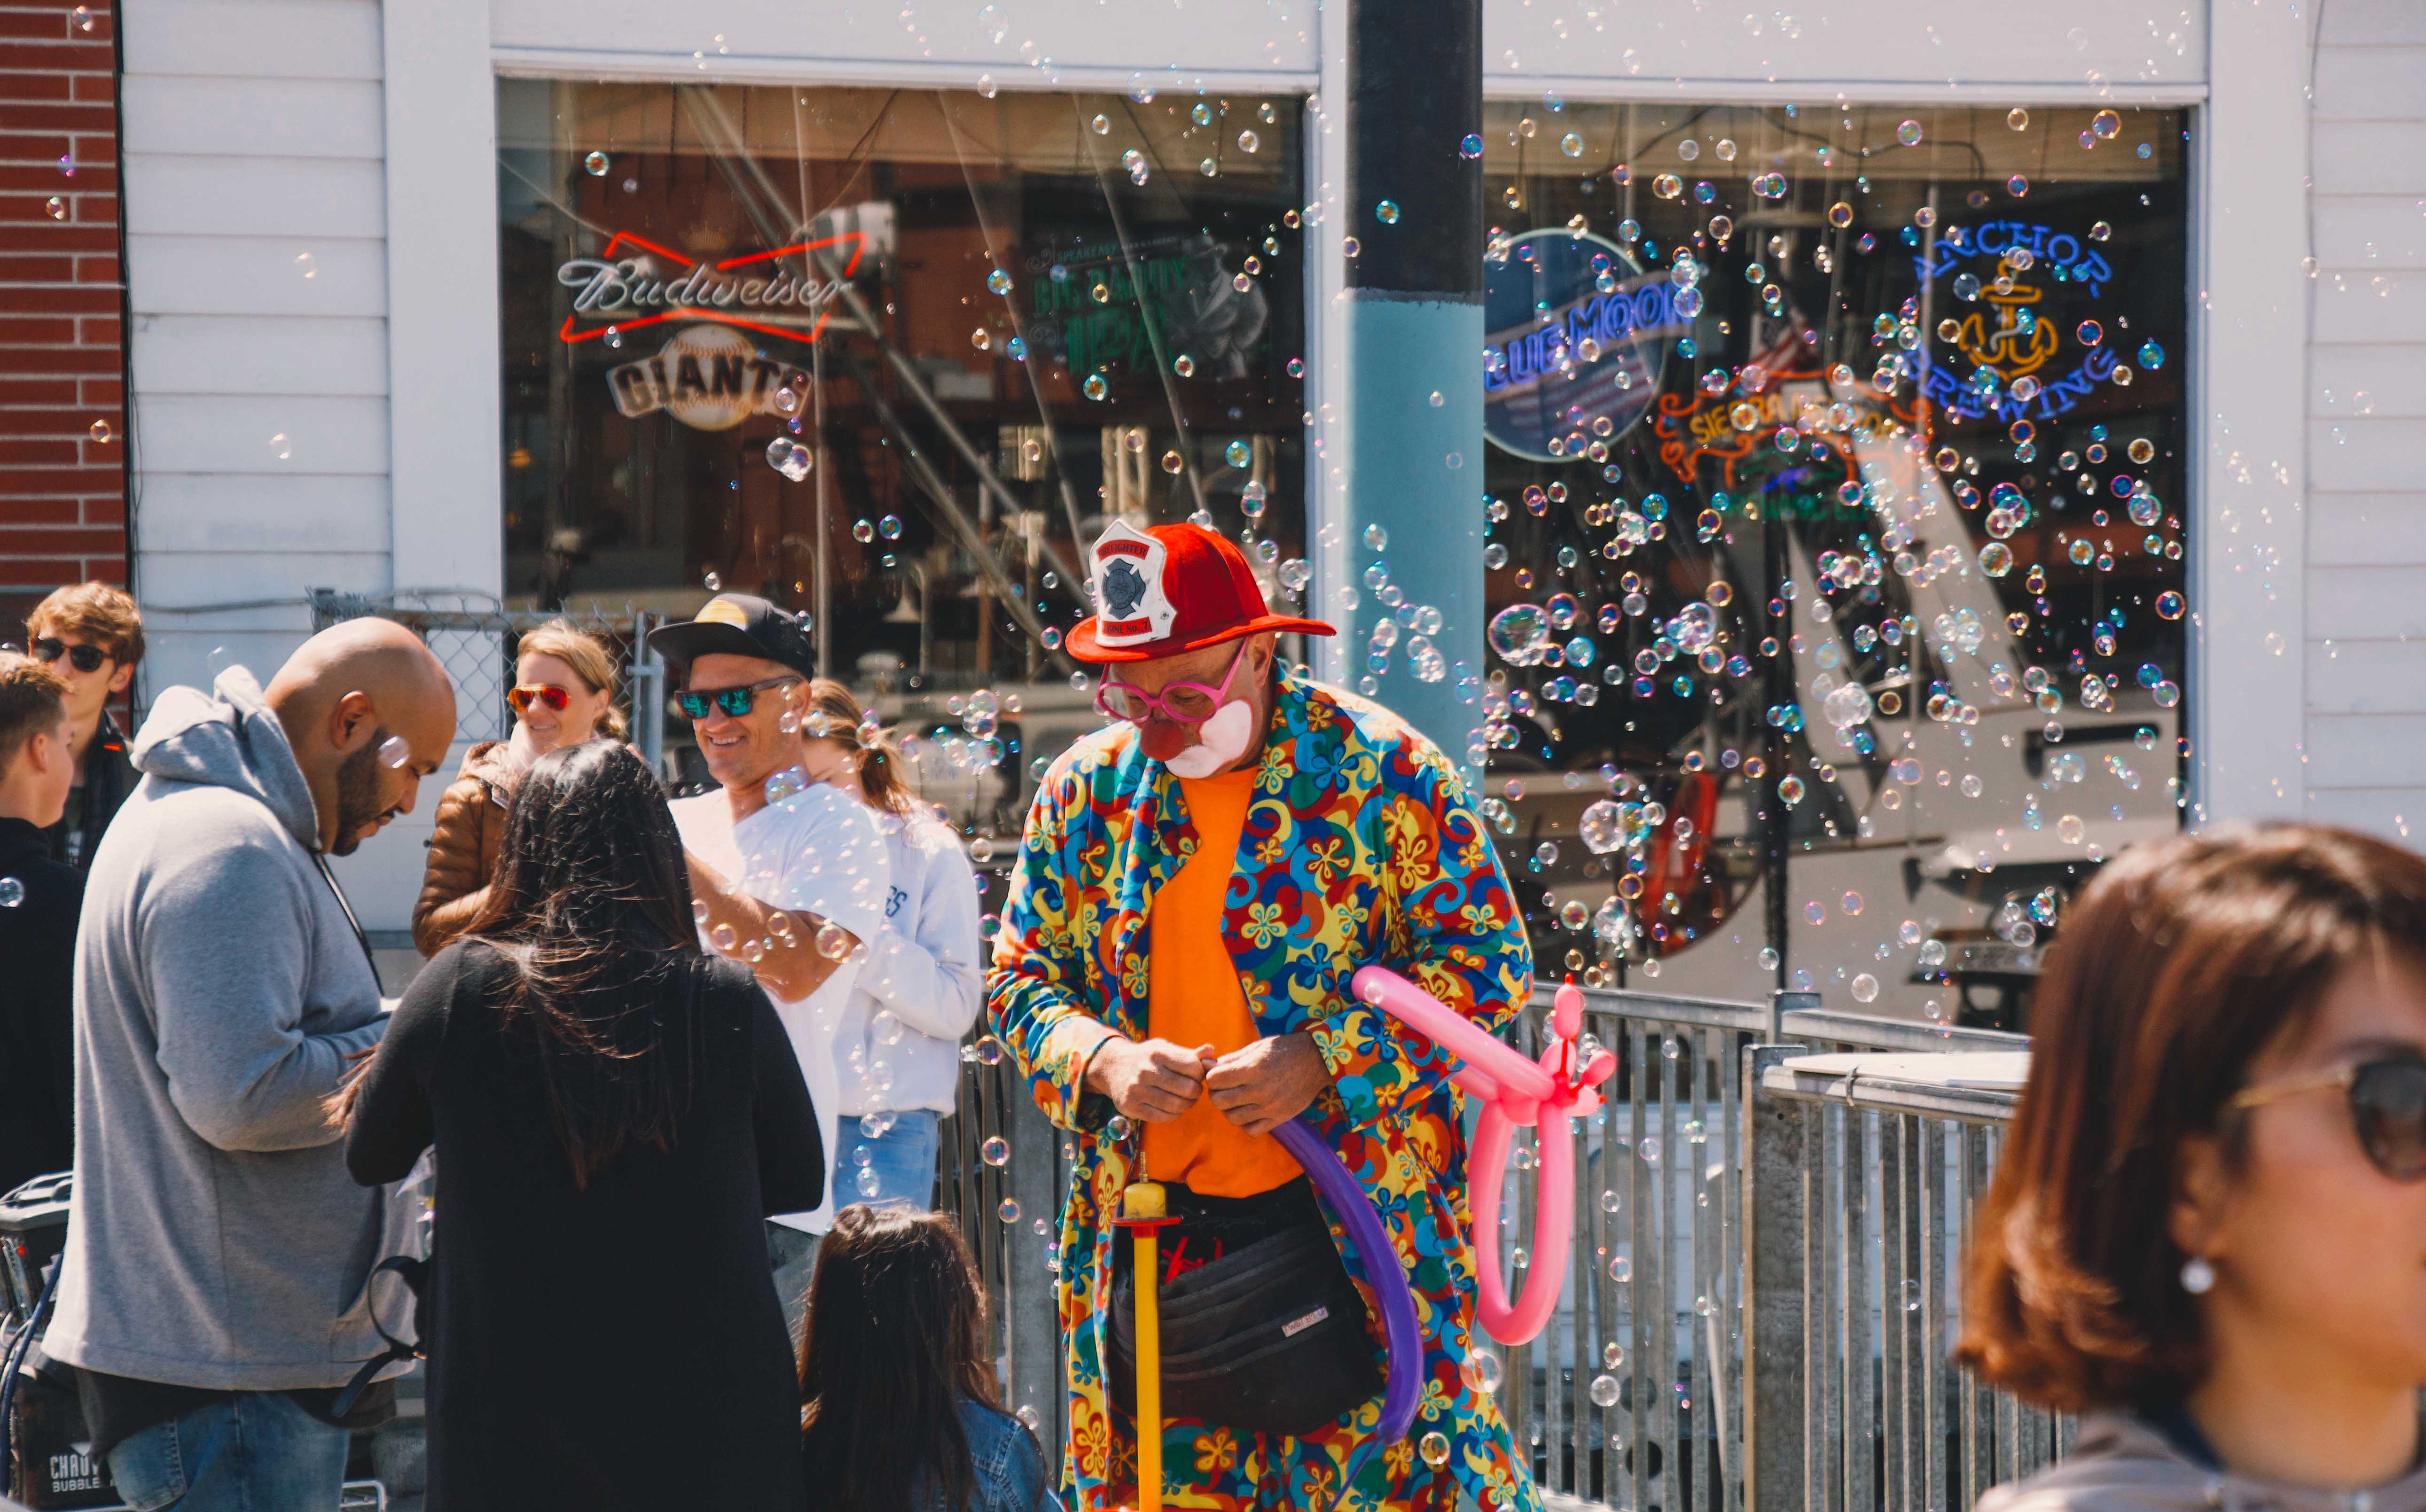 San Francisco clown